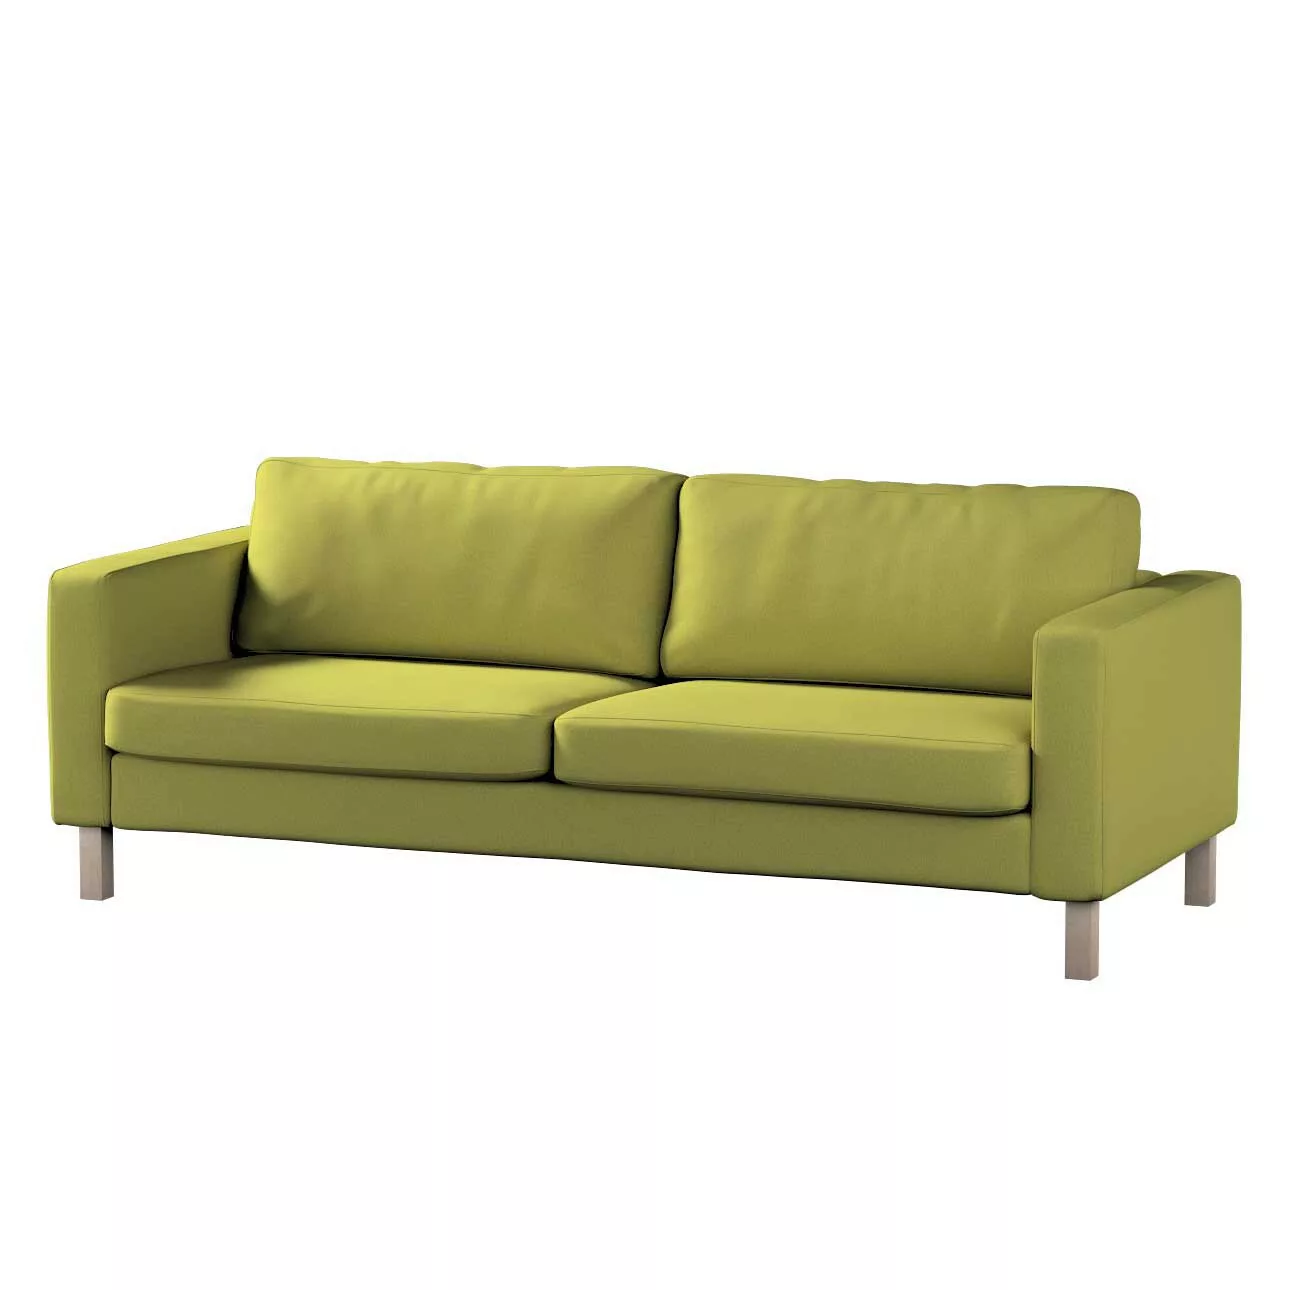 Bezug für Karlstad 3-Sitzer Sofa nicht ausklappbar, kurz, limone, Bezug für günstig online kaufen